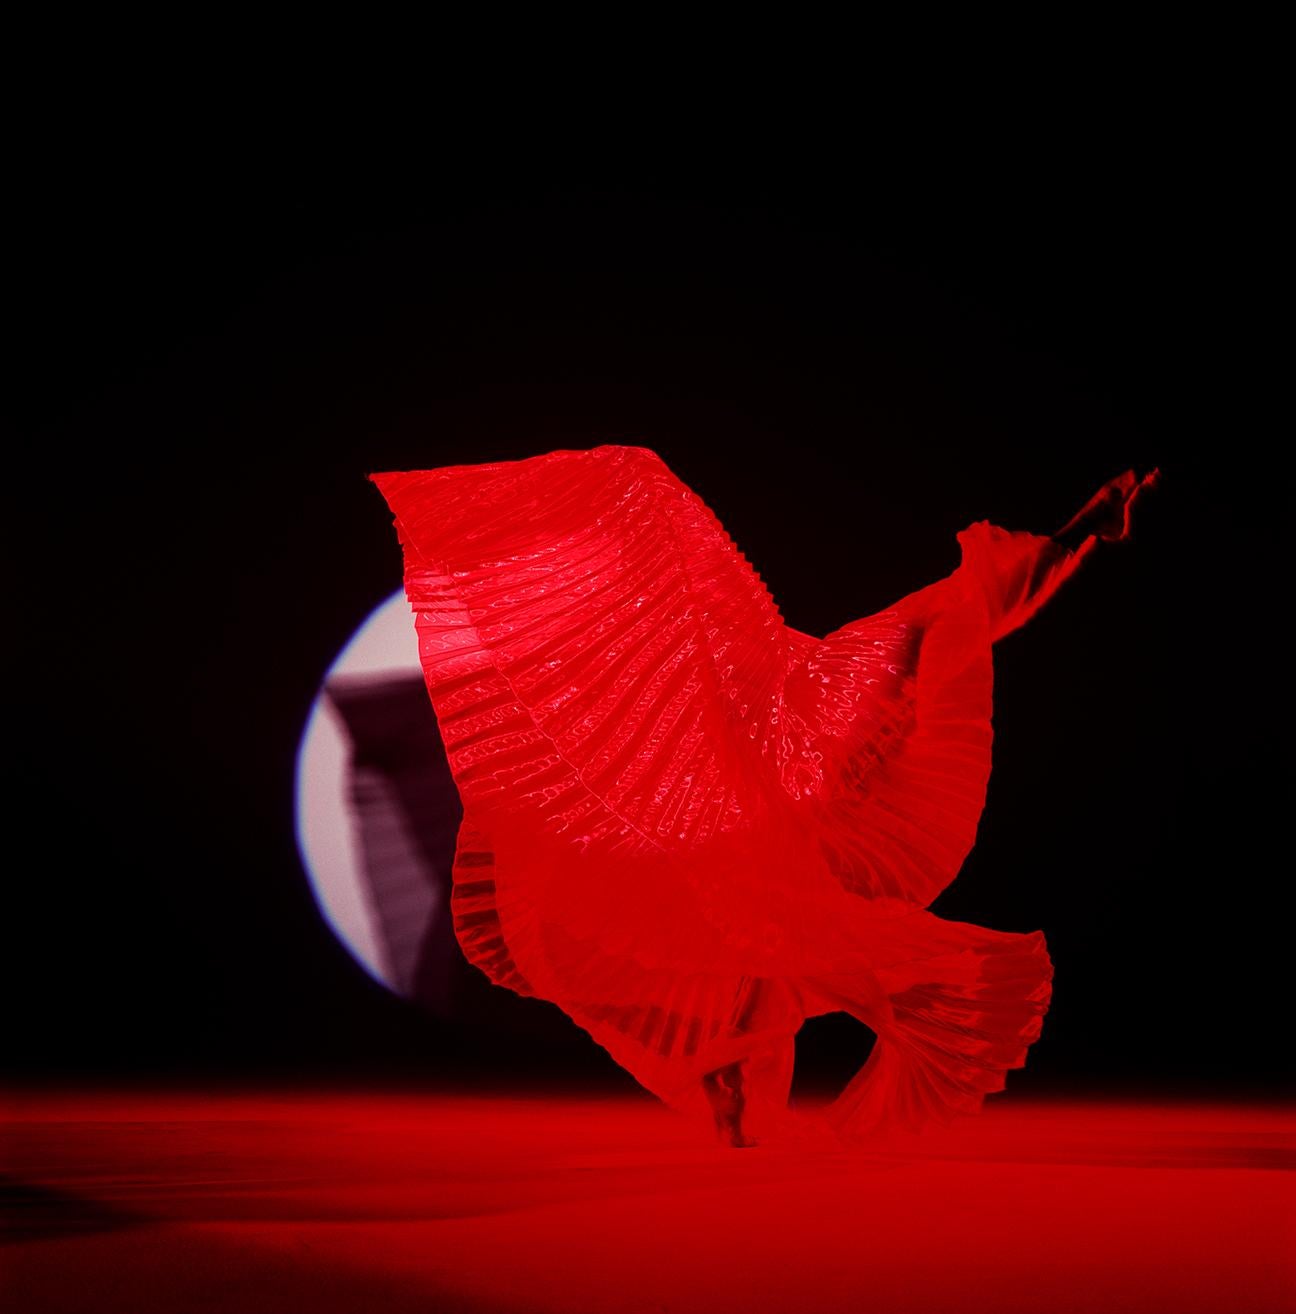 Guido Argentini Nude Photograph – Giulia mit roten Flügeln – nacktes Foto eines weiblichen Models mit rotem Hintergrund